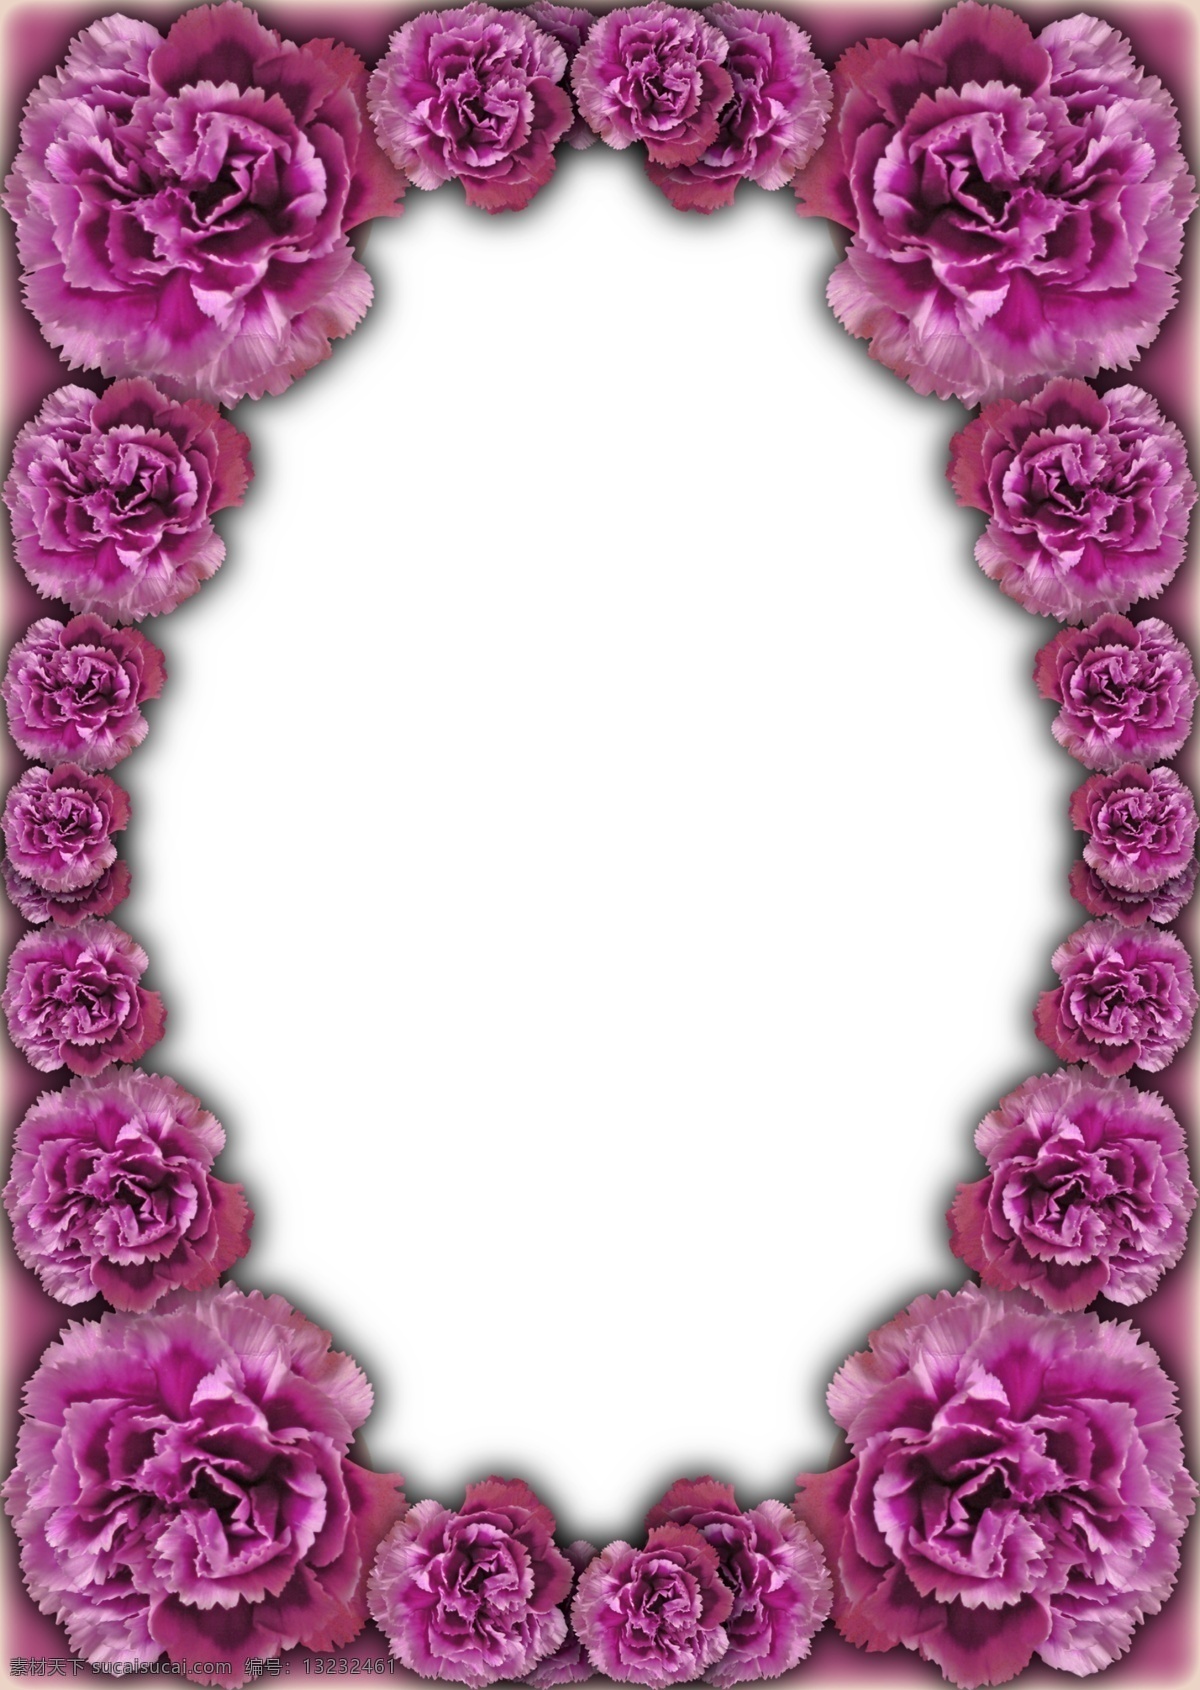 紫红 玫瑰花 相框 边框 分层 花卉 玫瑰 植物 psd源文件 婚纱 儿童 写真 相册 模板